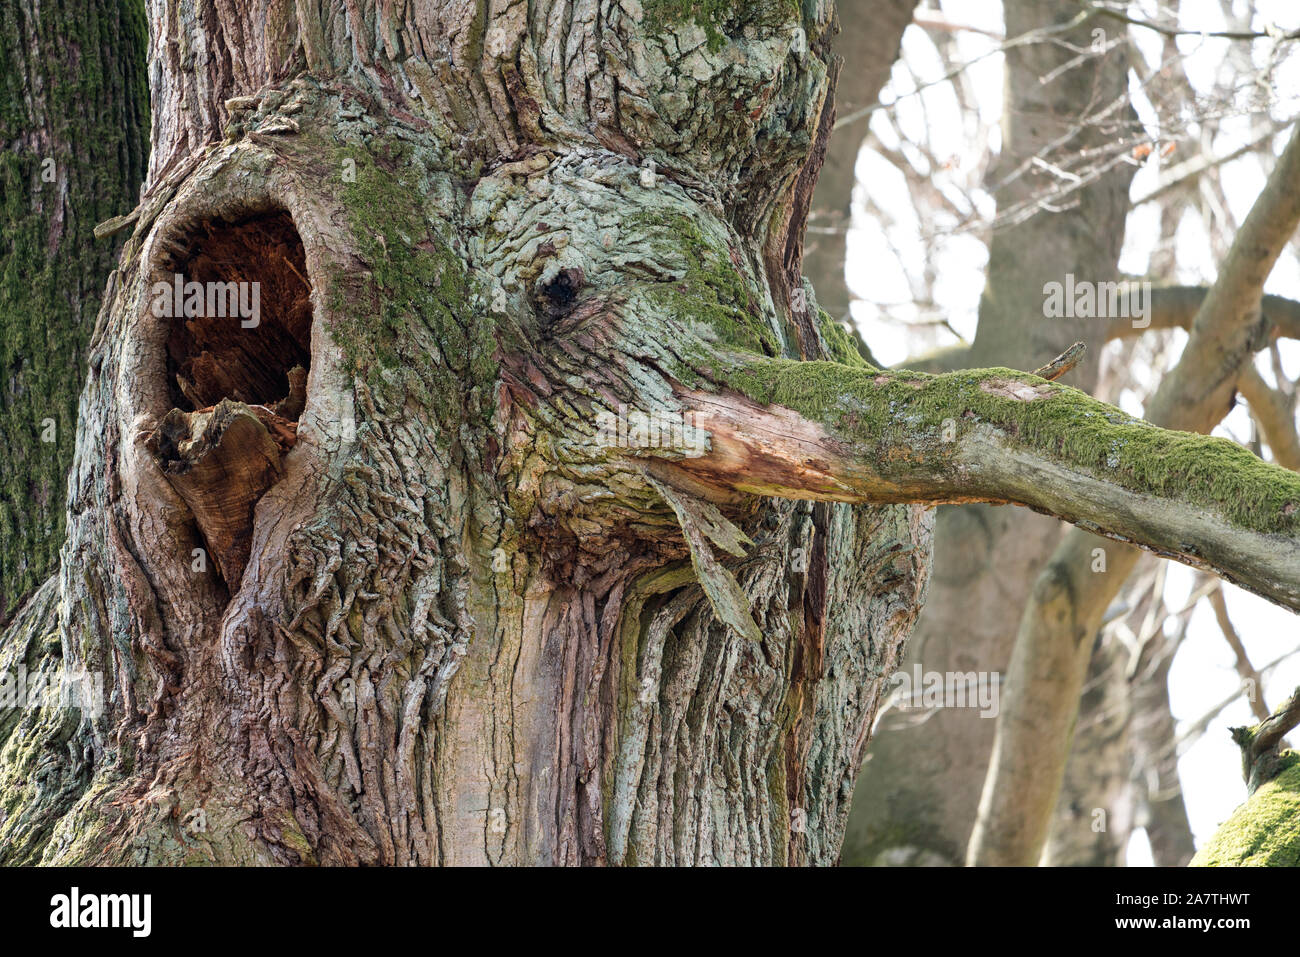 Baum Gesicht, sieht aus wie ein Elefant, Urwald Urwald Sababurg, Hofgeismar, Weserbergland, Nordrhein-Westfalen, Hessen, Deutschland Stockfoto